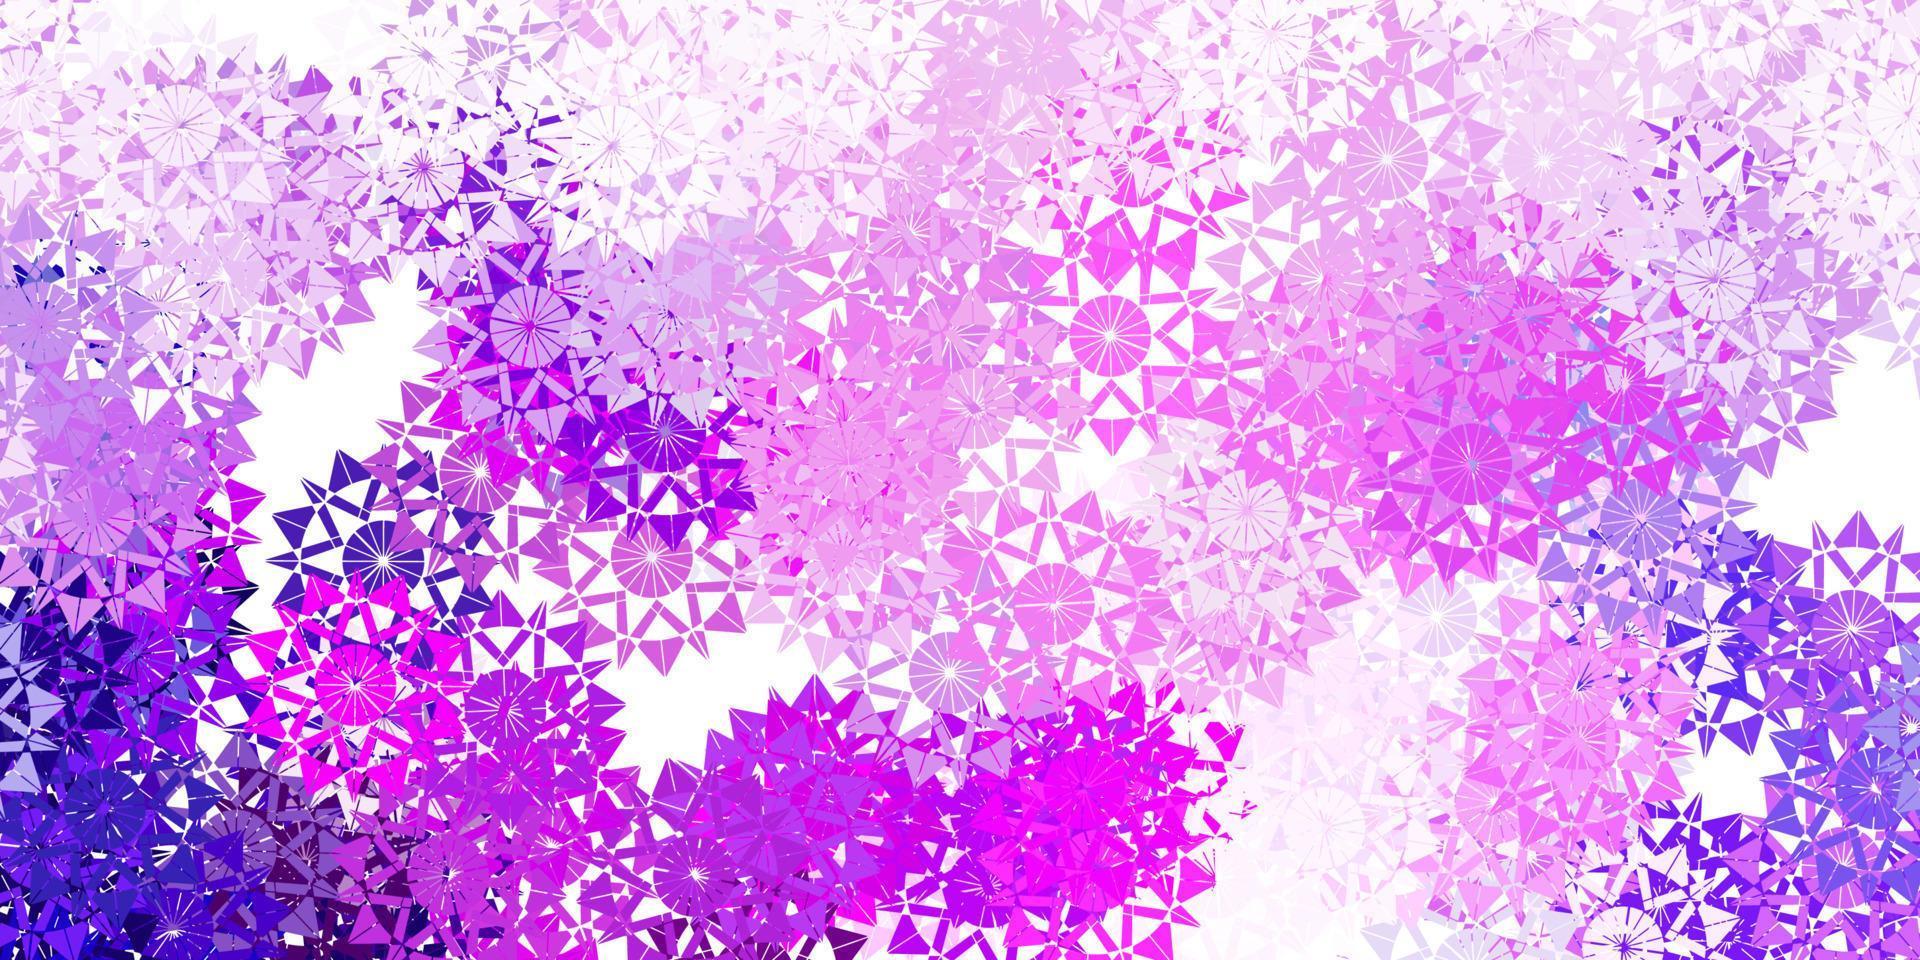 ljuslila, rosa vektormönster med färgade snöflingor. vektor